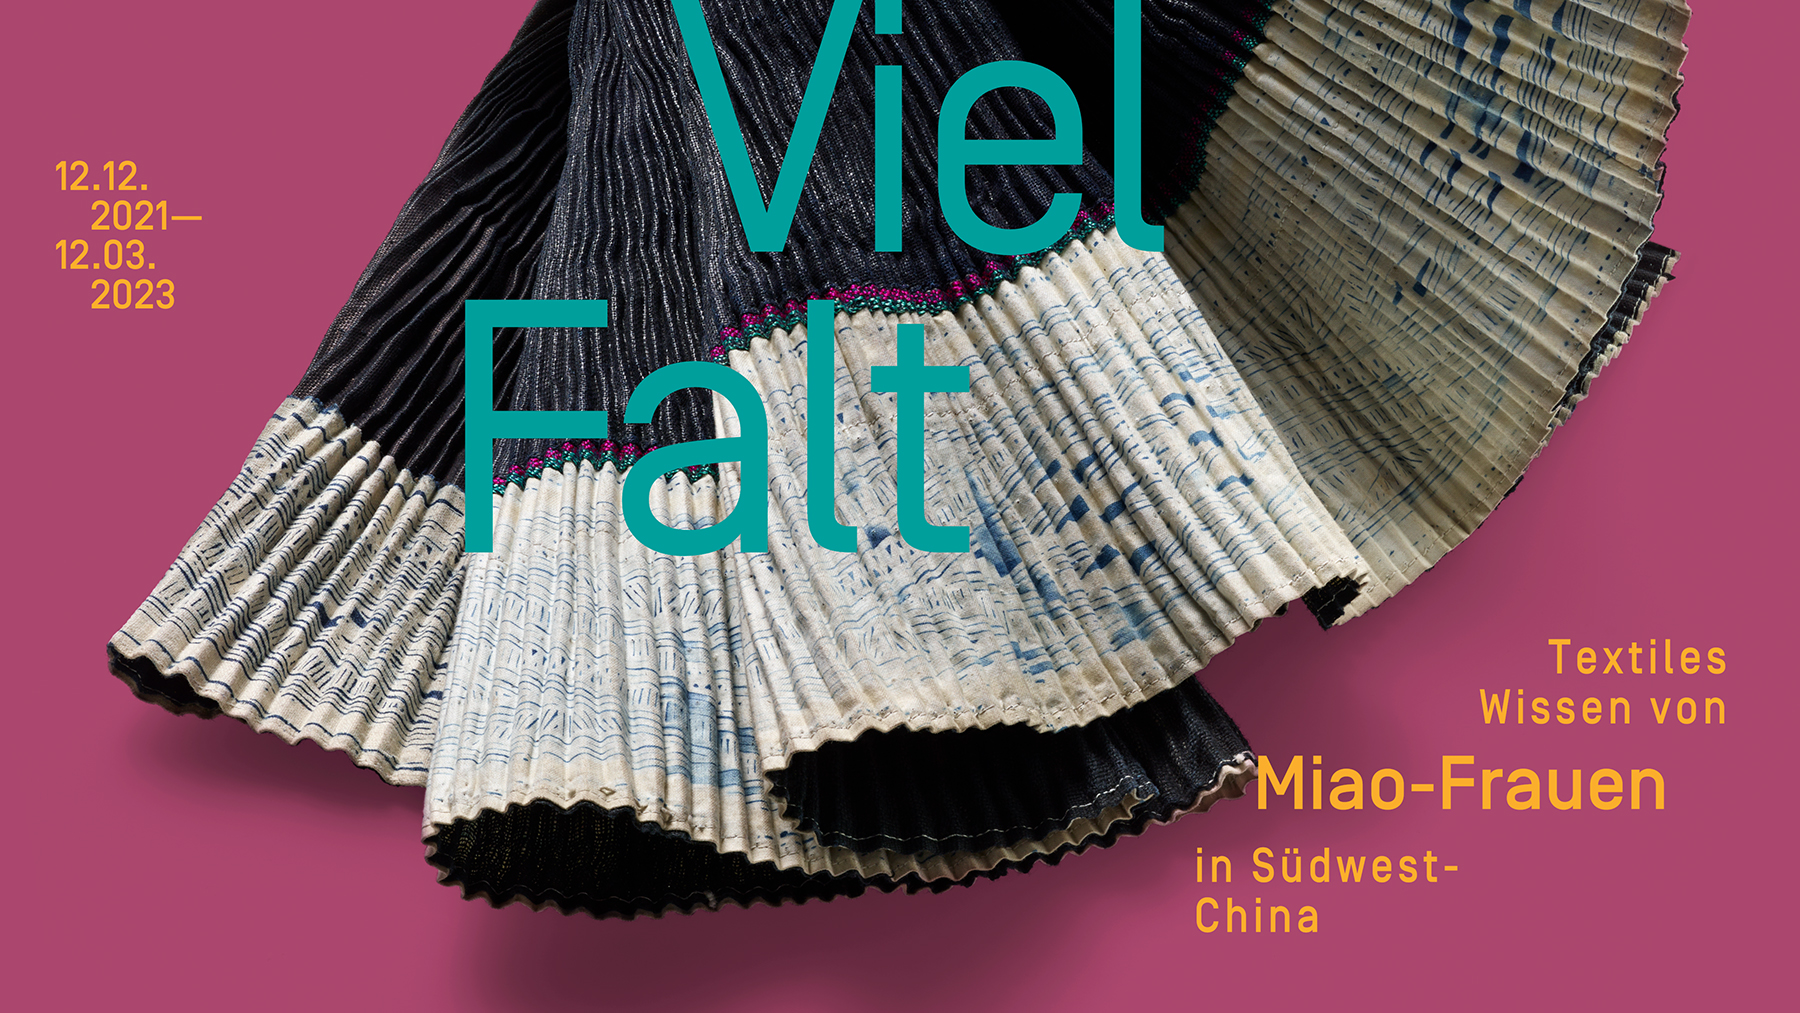 VielFalt - Textiles Wissen der Miao-Frauen in Südwest-China